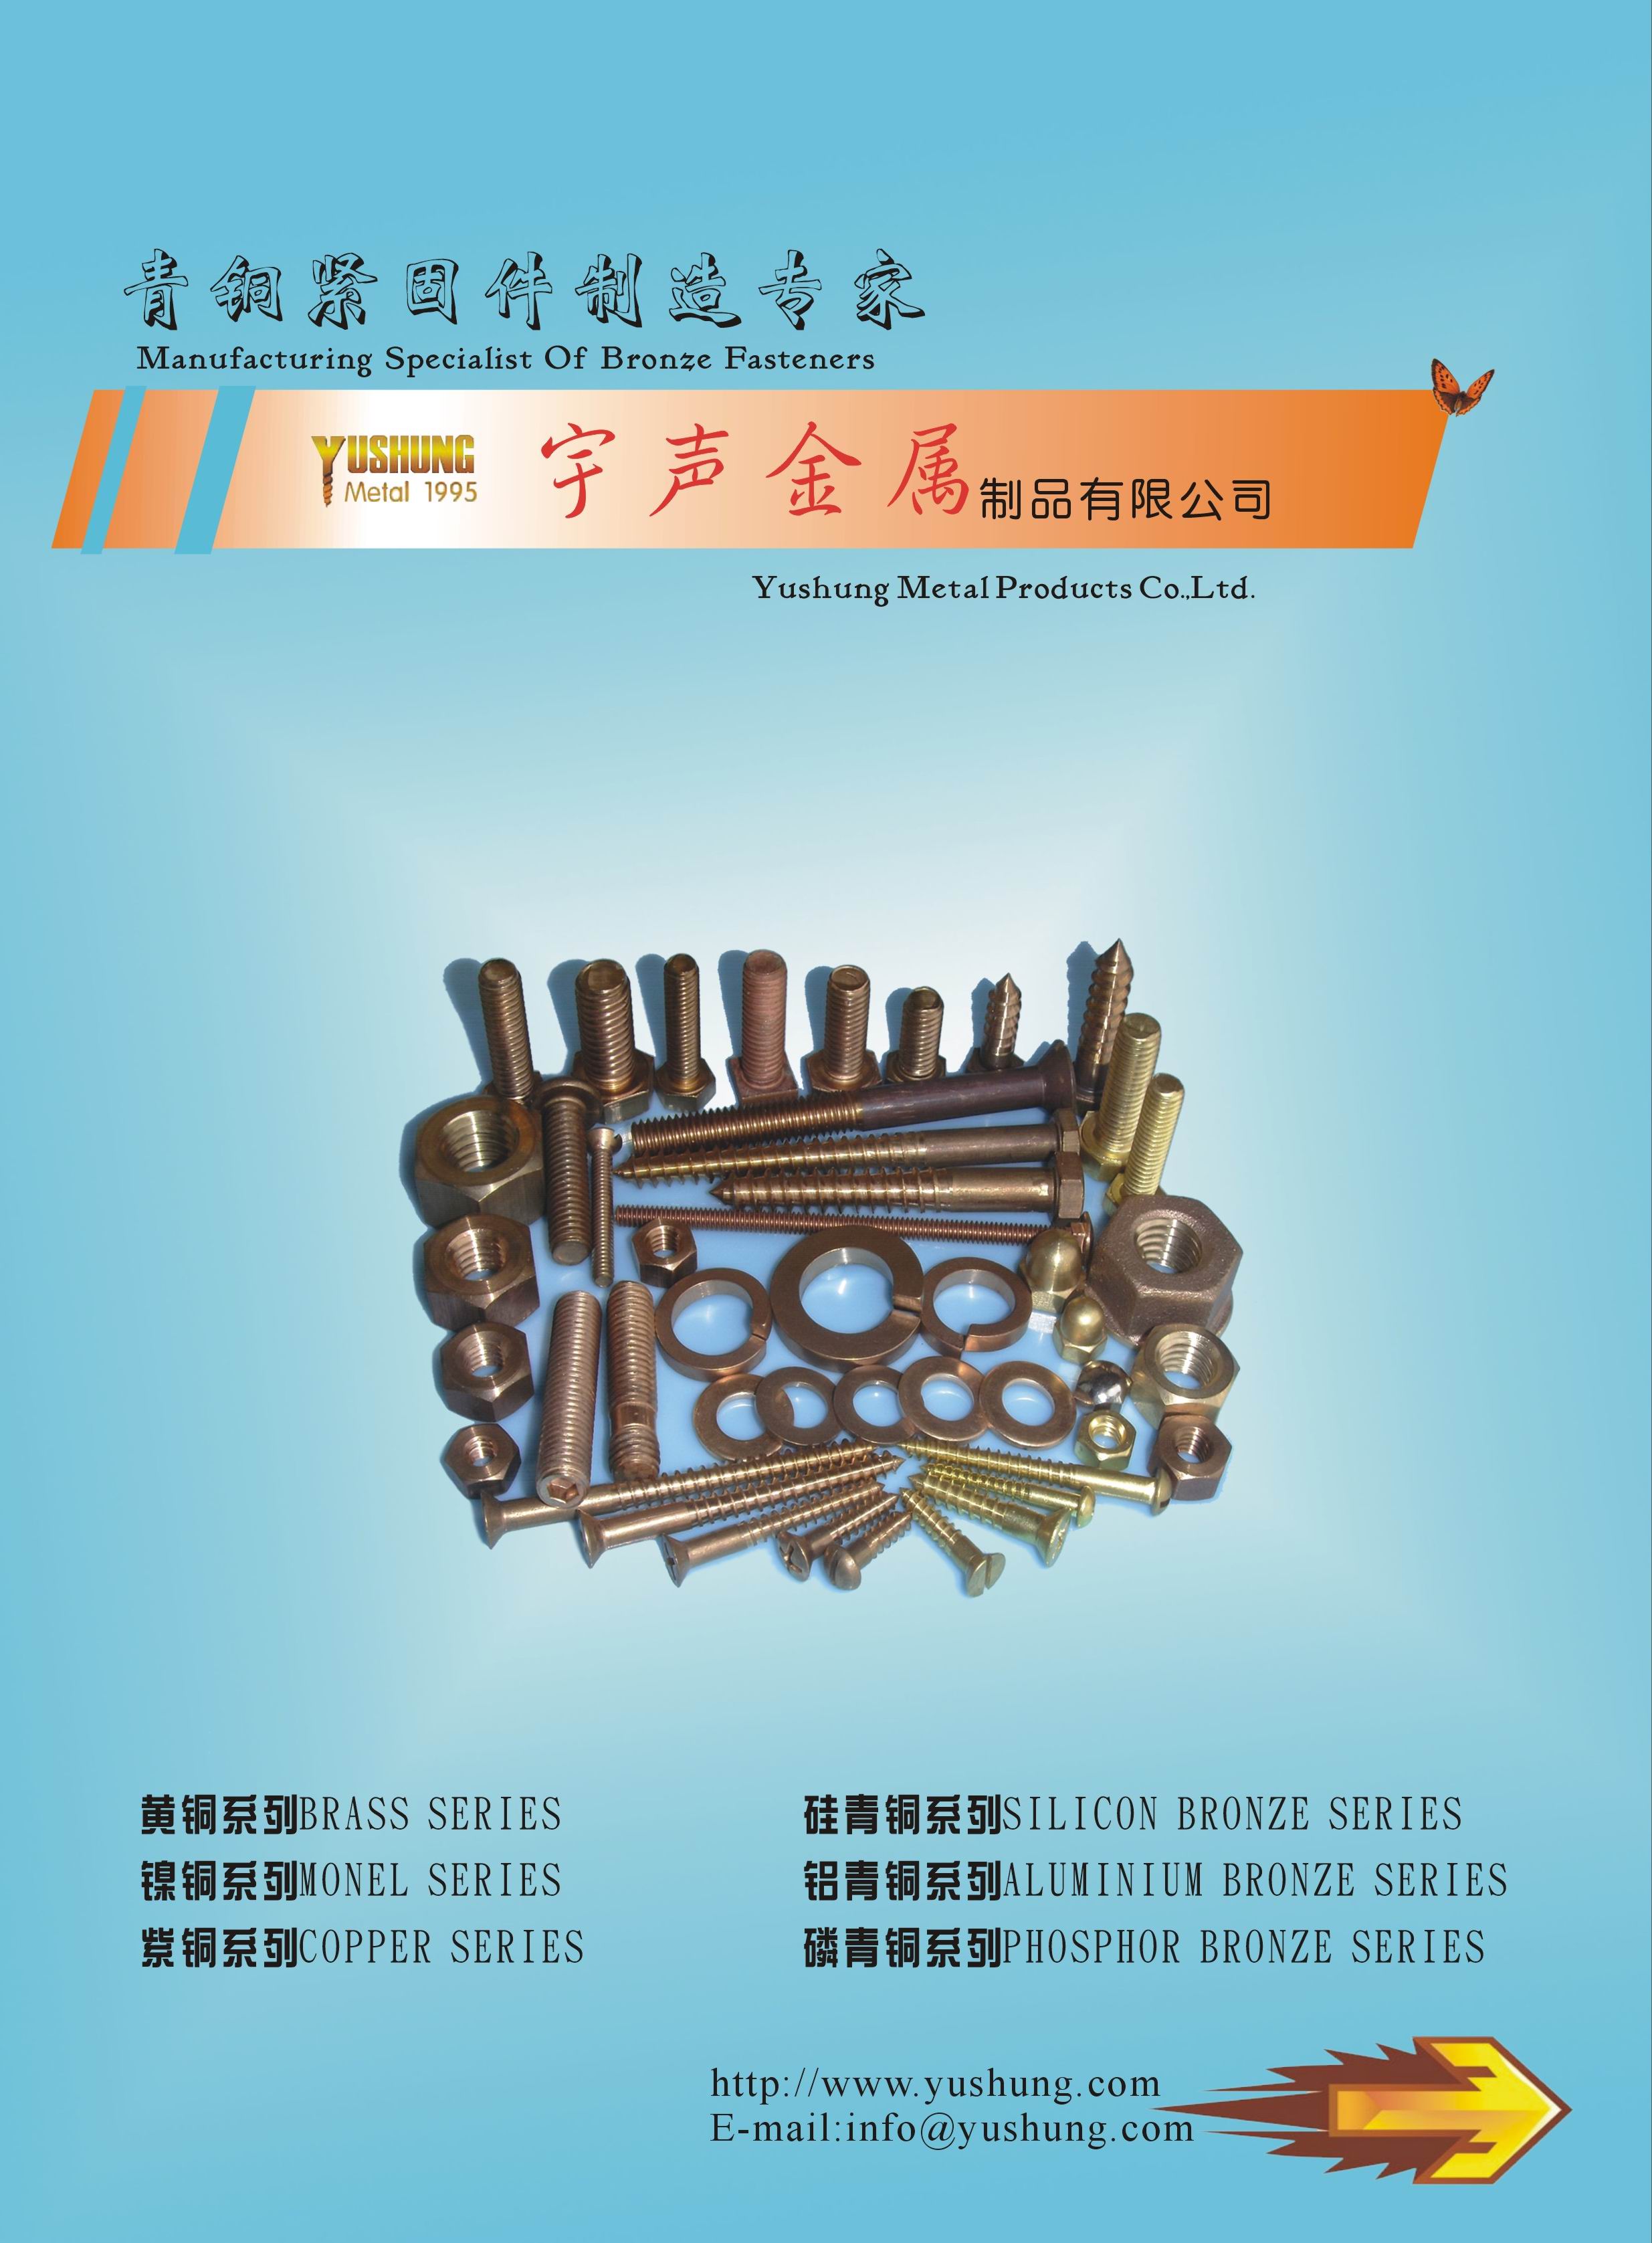 Chongqing Yushung Non-Ferrous Metals Co., Ltd. Online Catalogues